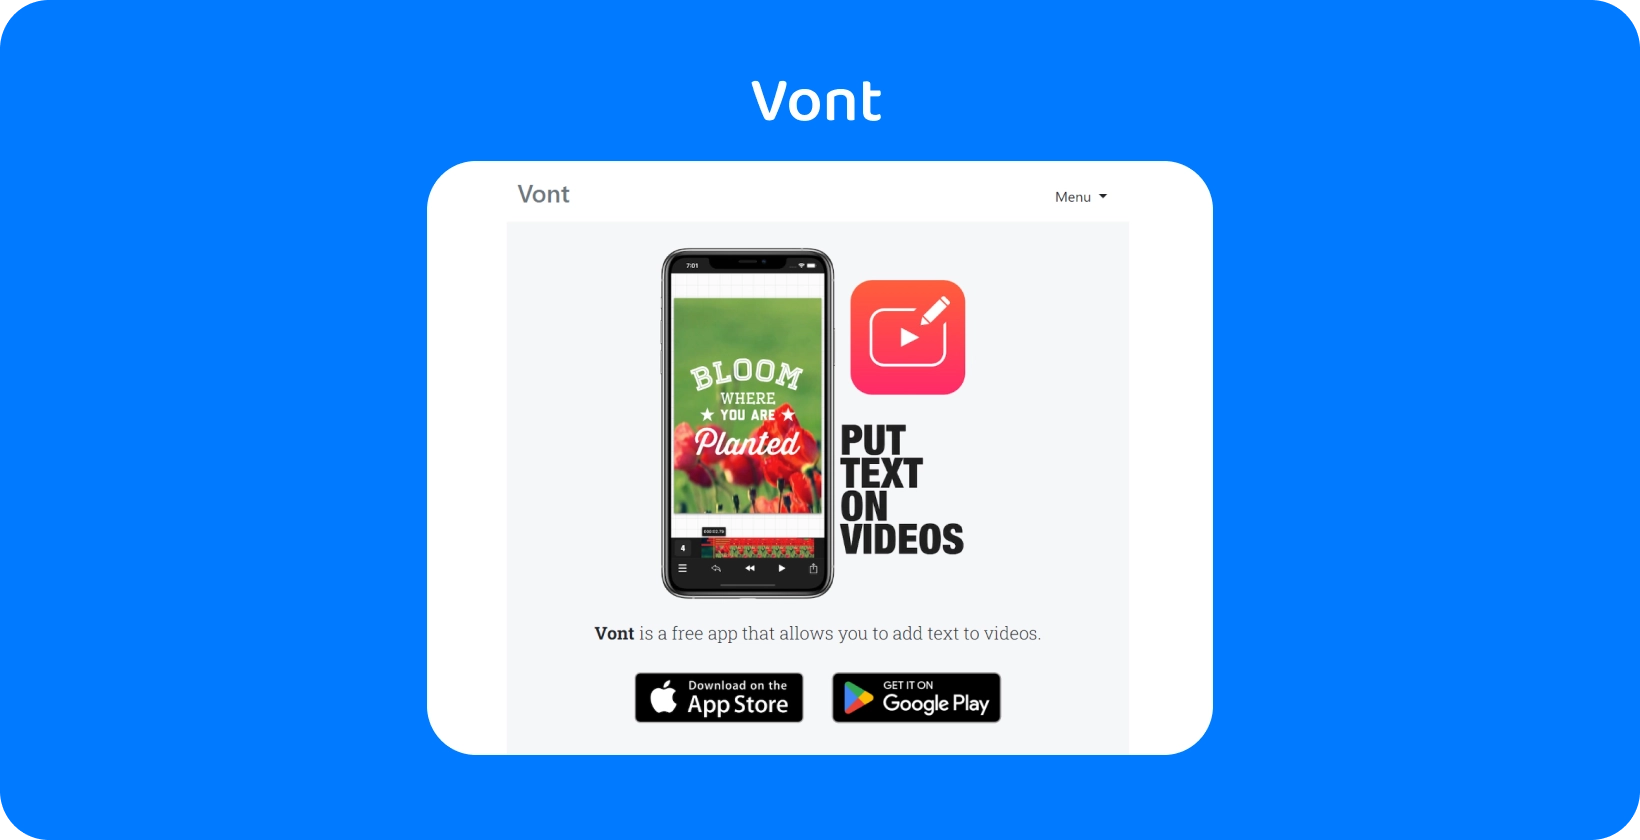 智能手机显示 Vont 应用程序界面，突出其在视频上添加文本的功能，可在 App Store 和 Google Play 上获得